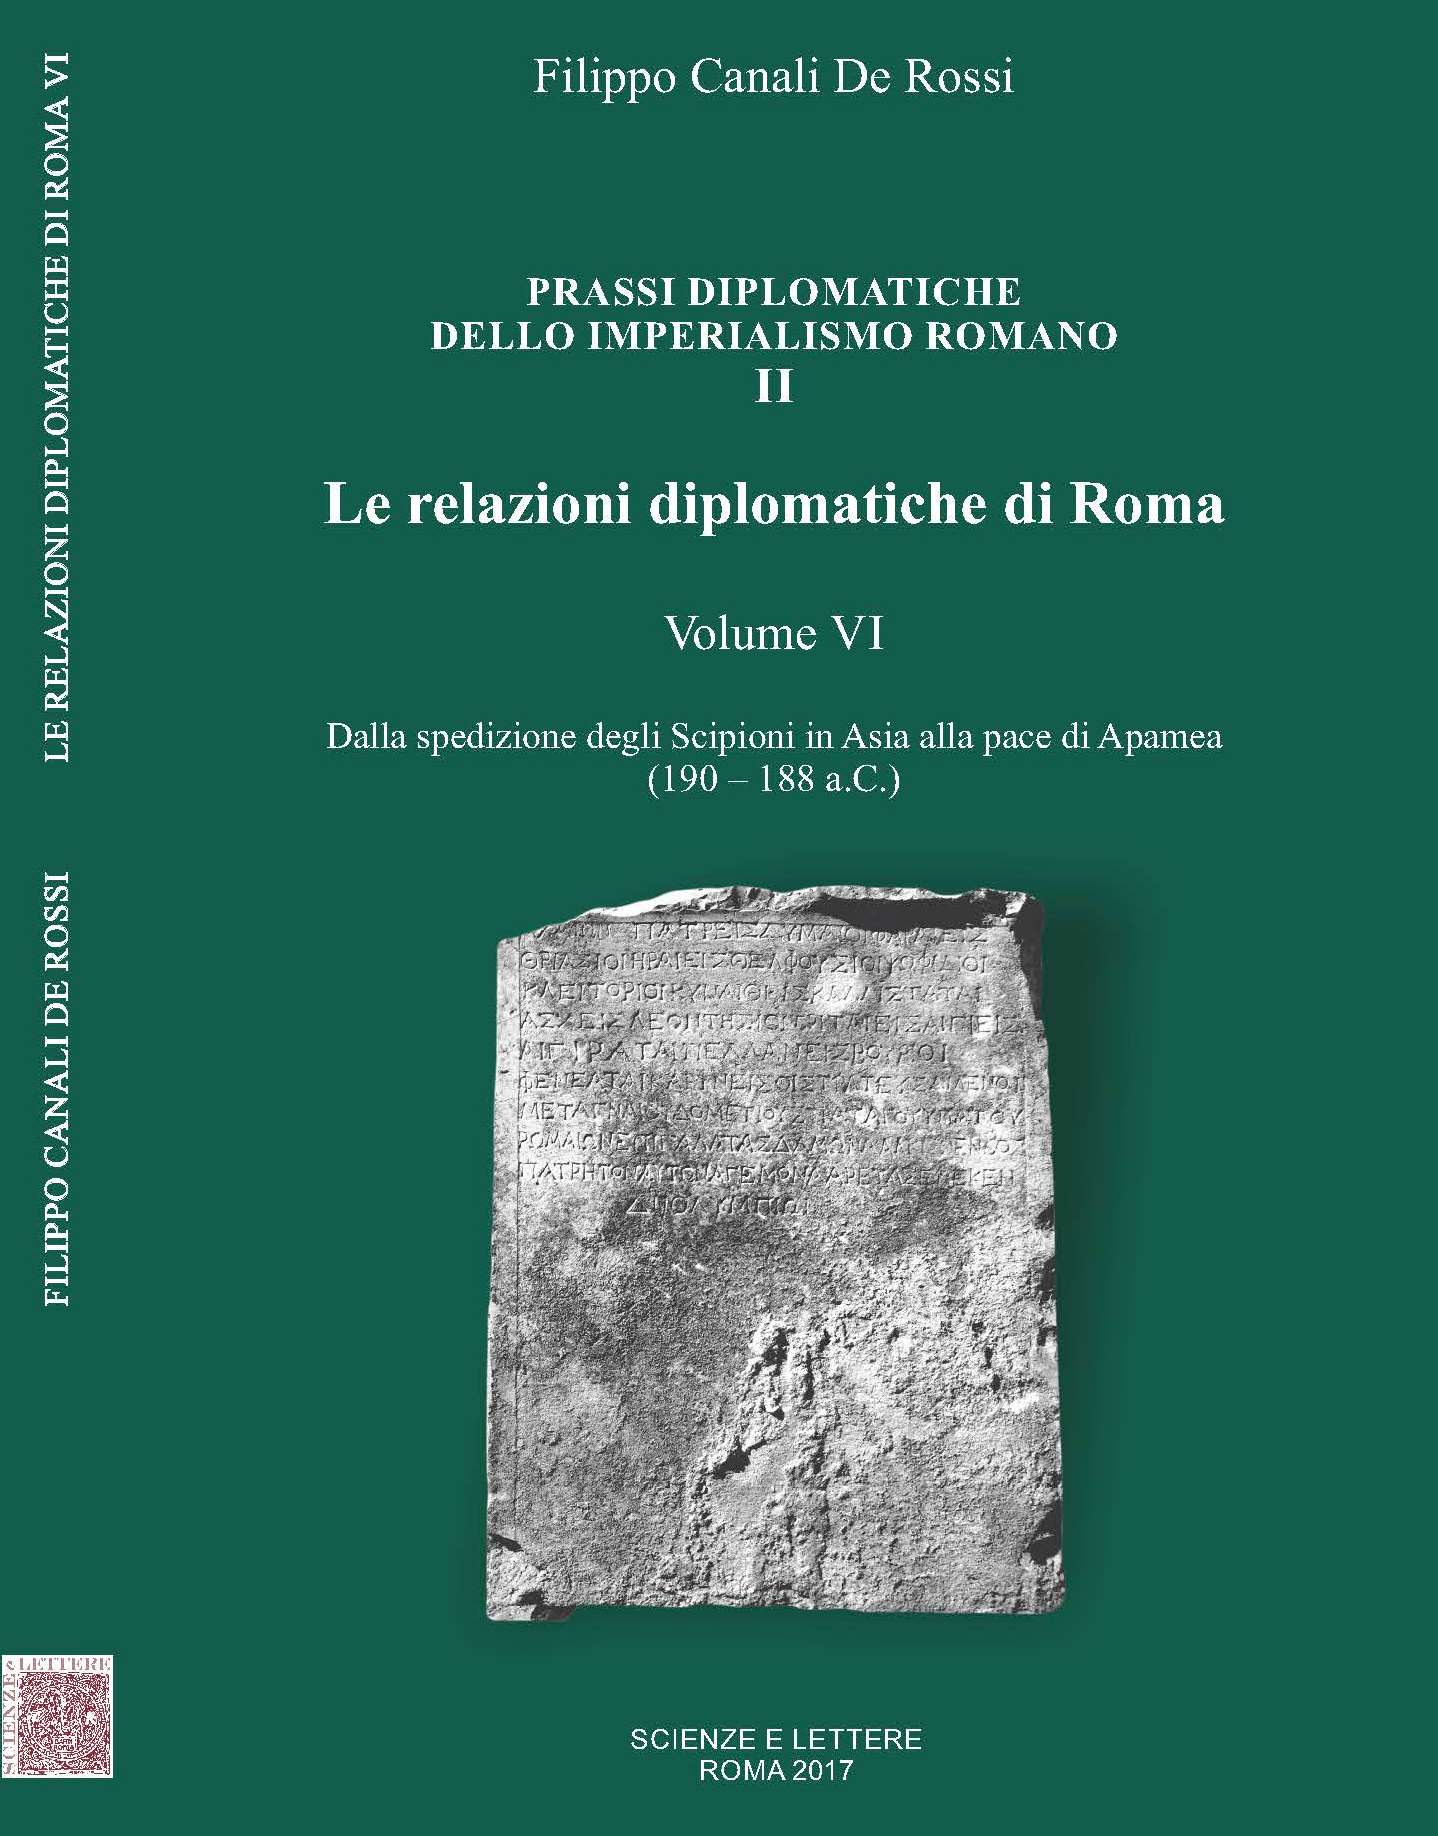 PRASSI DIPLOMATICHE  DELLO IMPERIALISMO ROMANO II<br/>

Le relazioni diplomatiche di Roma<br/>

Volume VI<br/>

